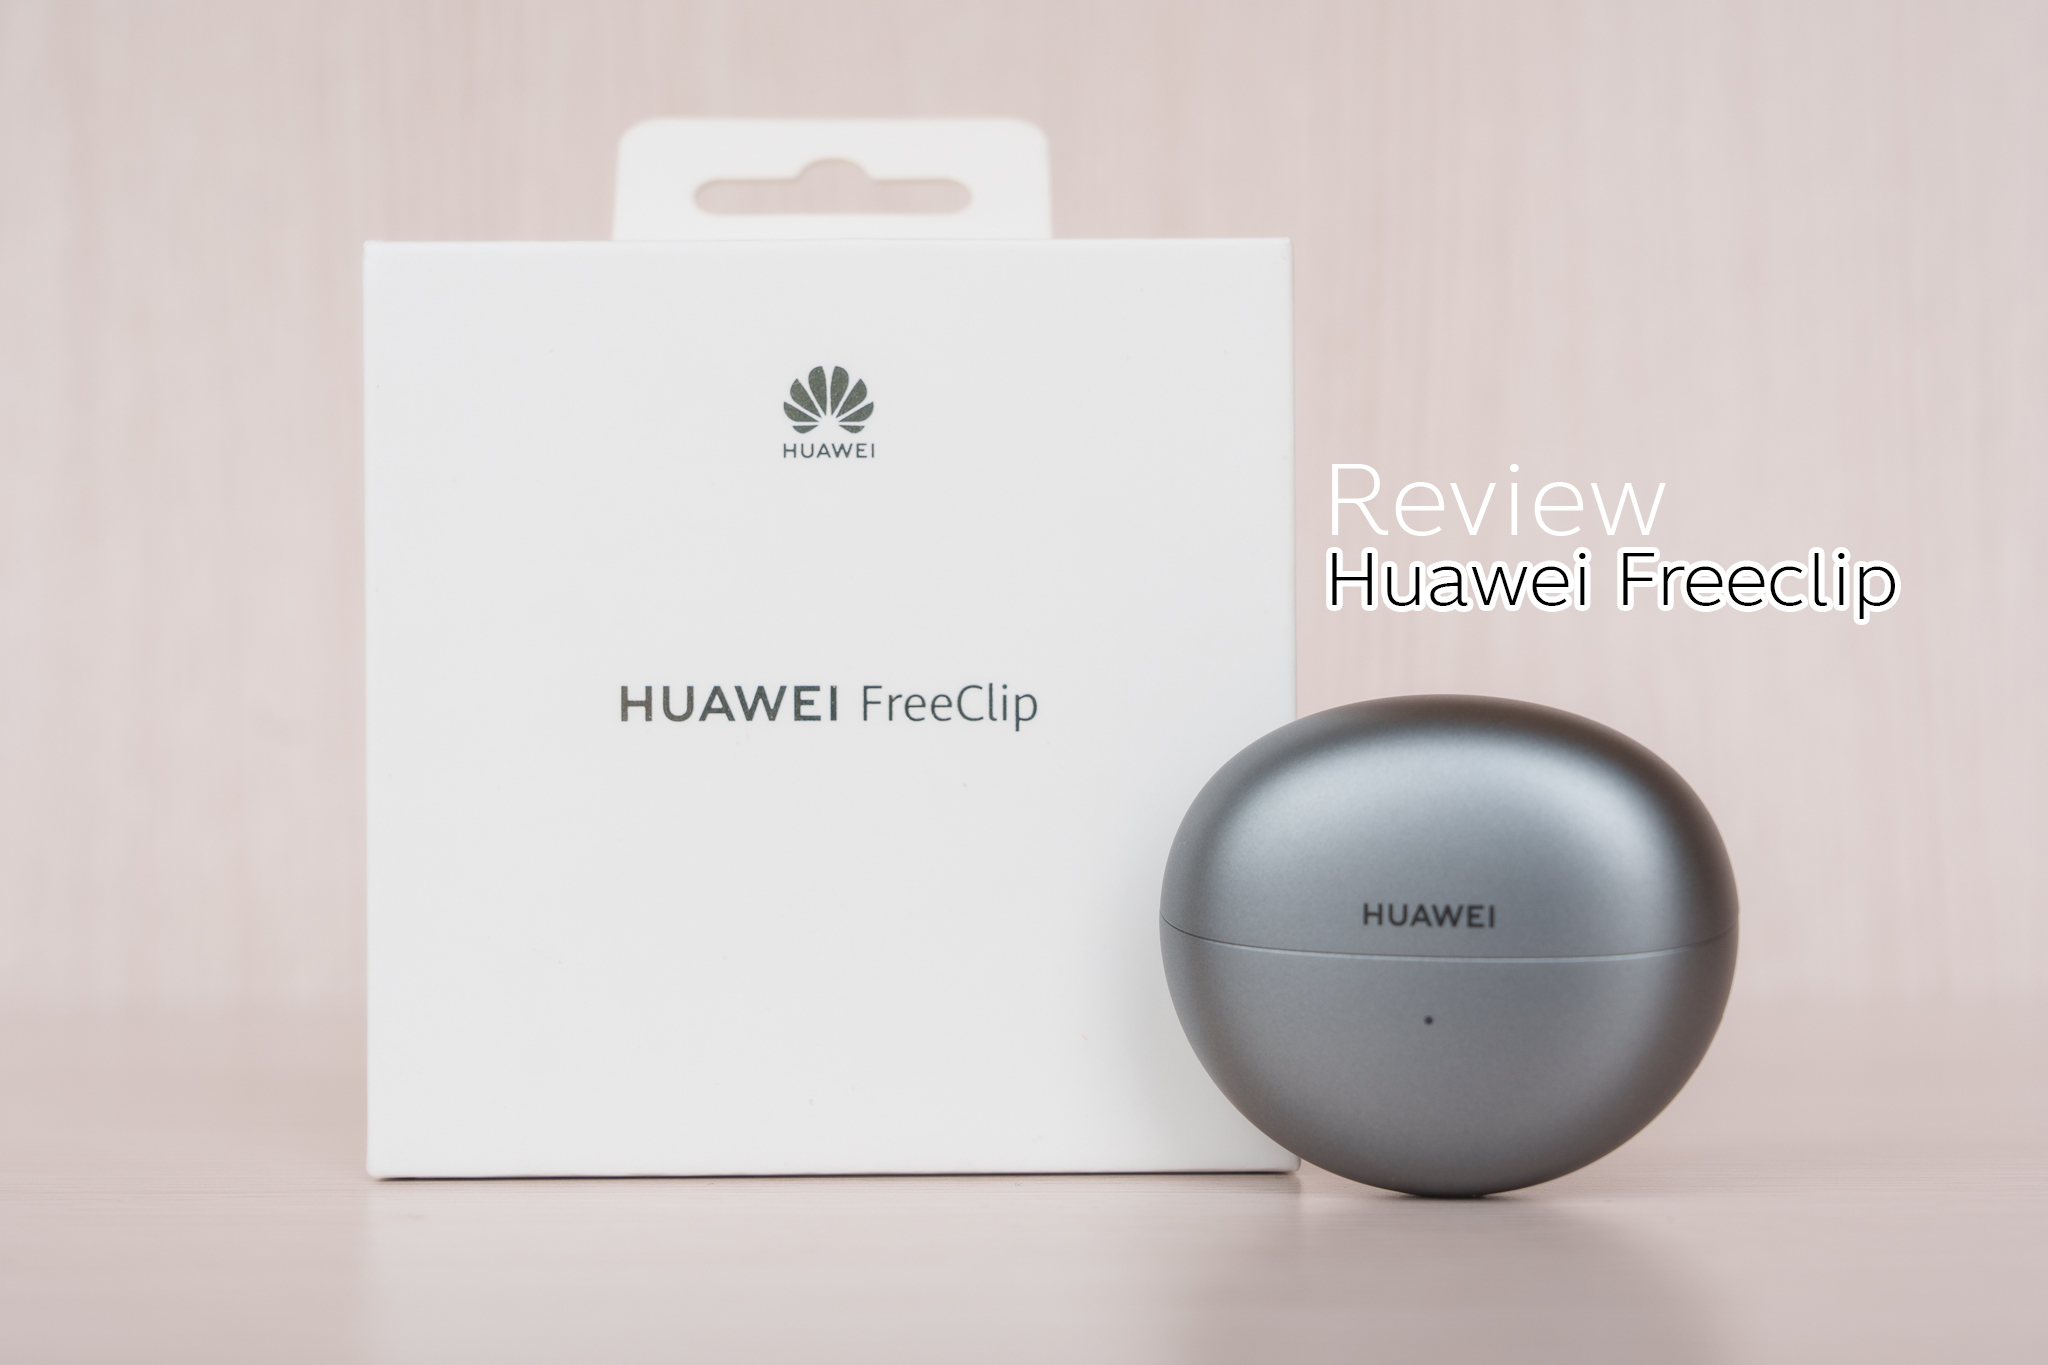 Review : Huawei Freeclip หูฟังดีไซน์ล้ำ อนาคตแห่งแฟชั่นด้านพลังเสียง